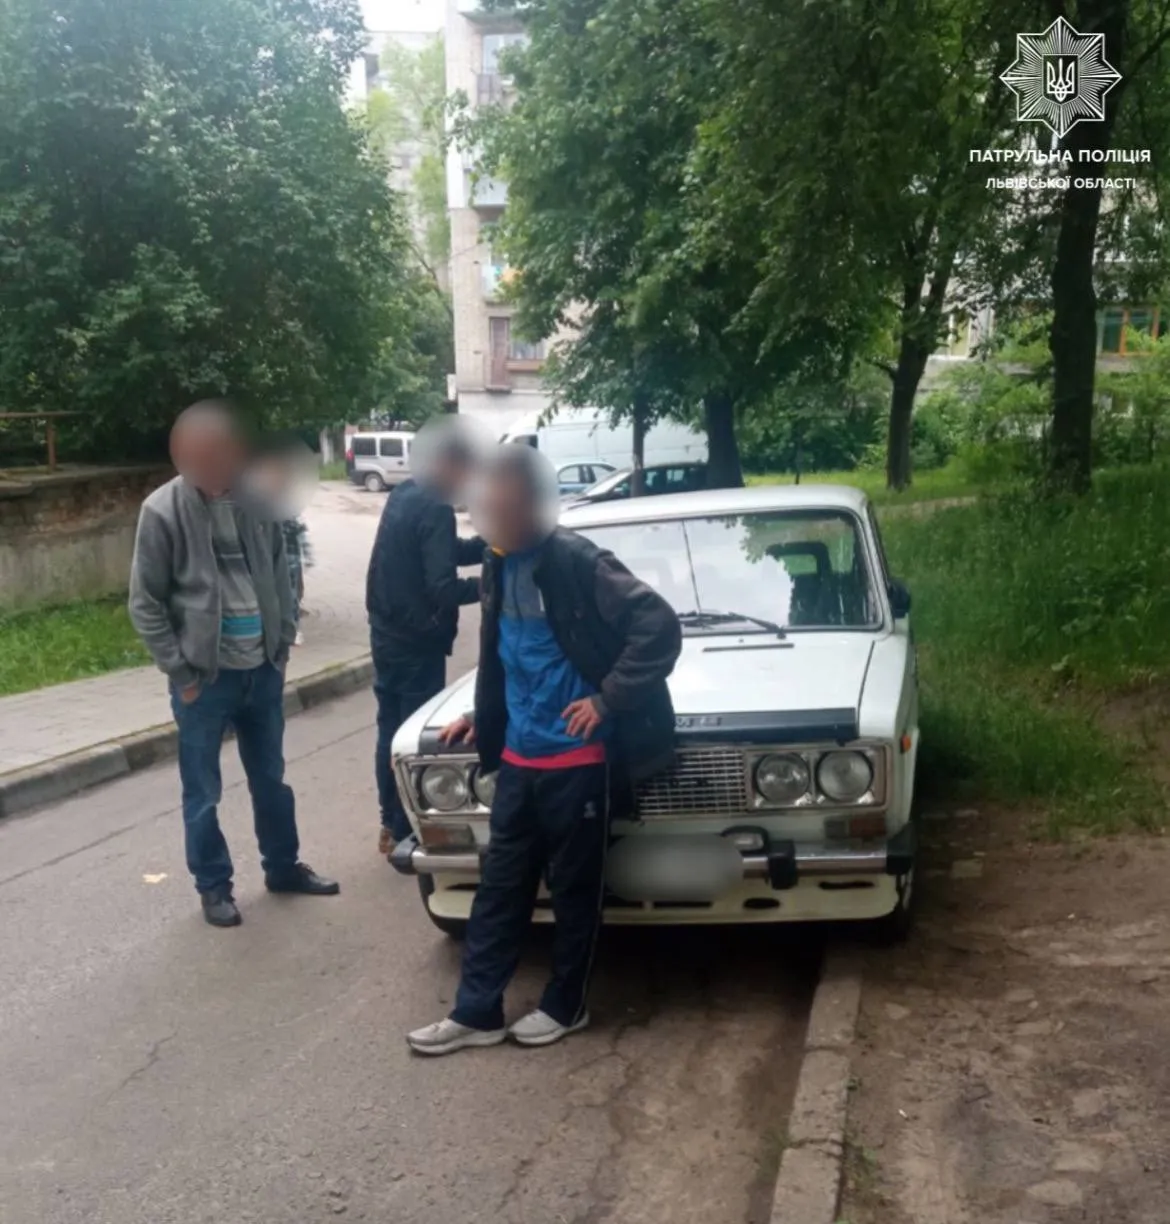 Превысил диапазон алкотестера: пьяный водитель во Львове шокировал правоохранителей